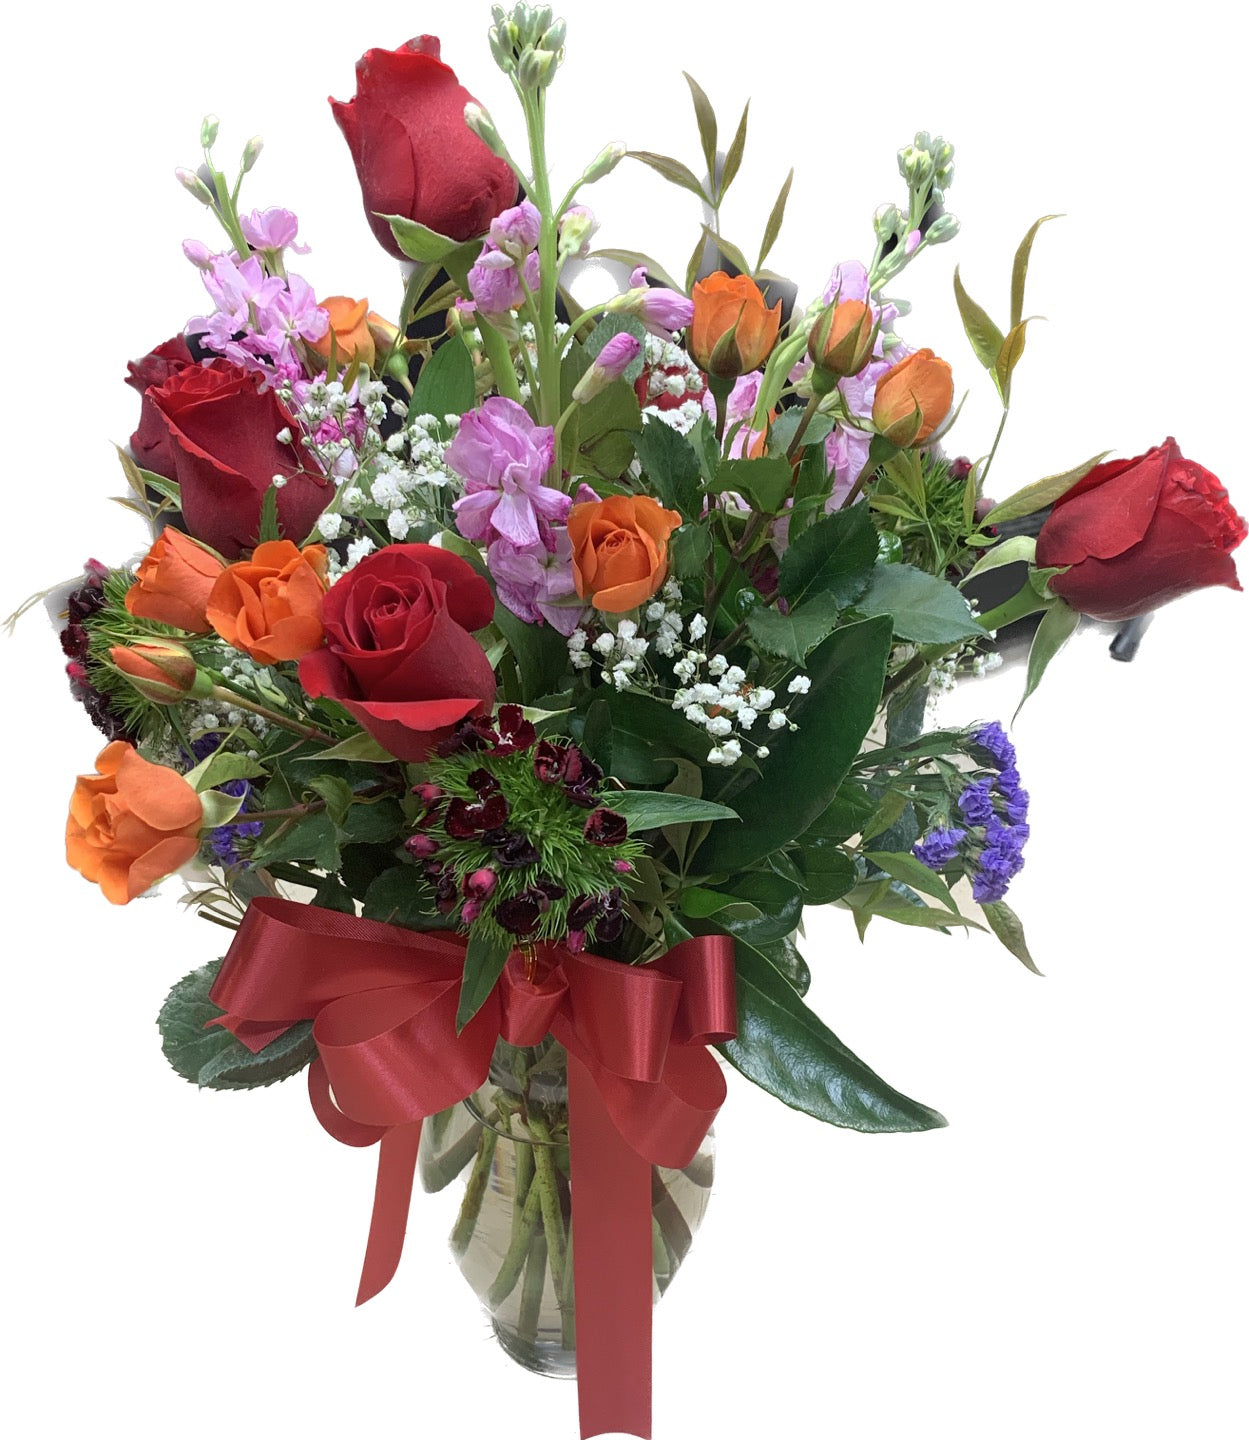 Florist's Choice Surprise Flower Vase